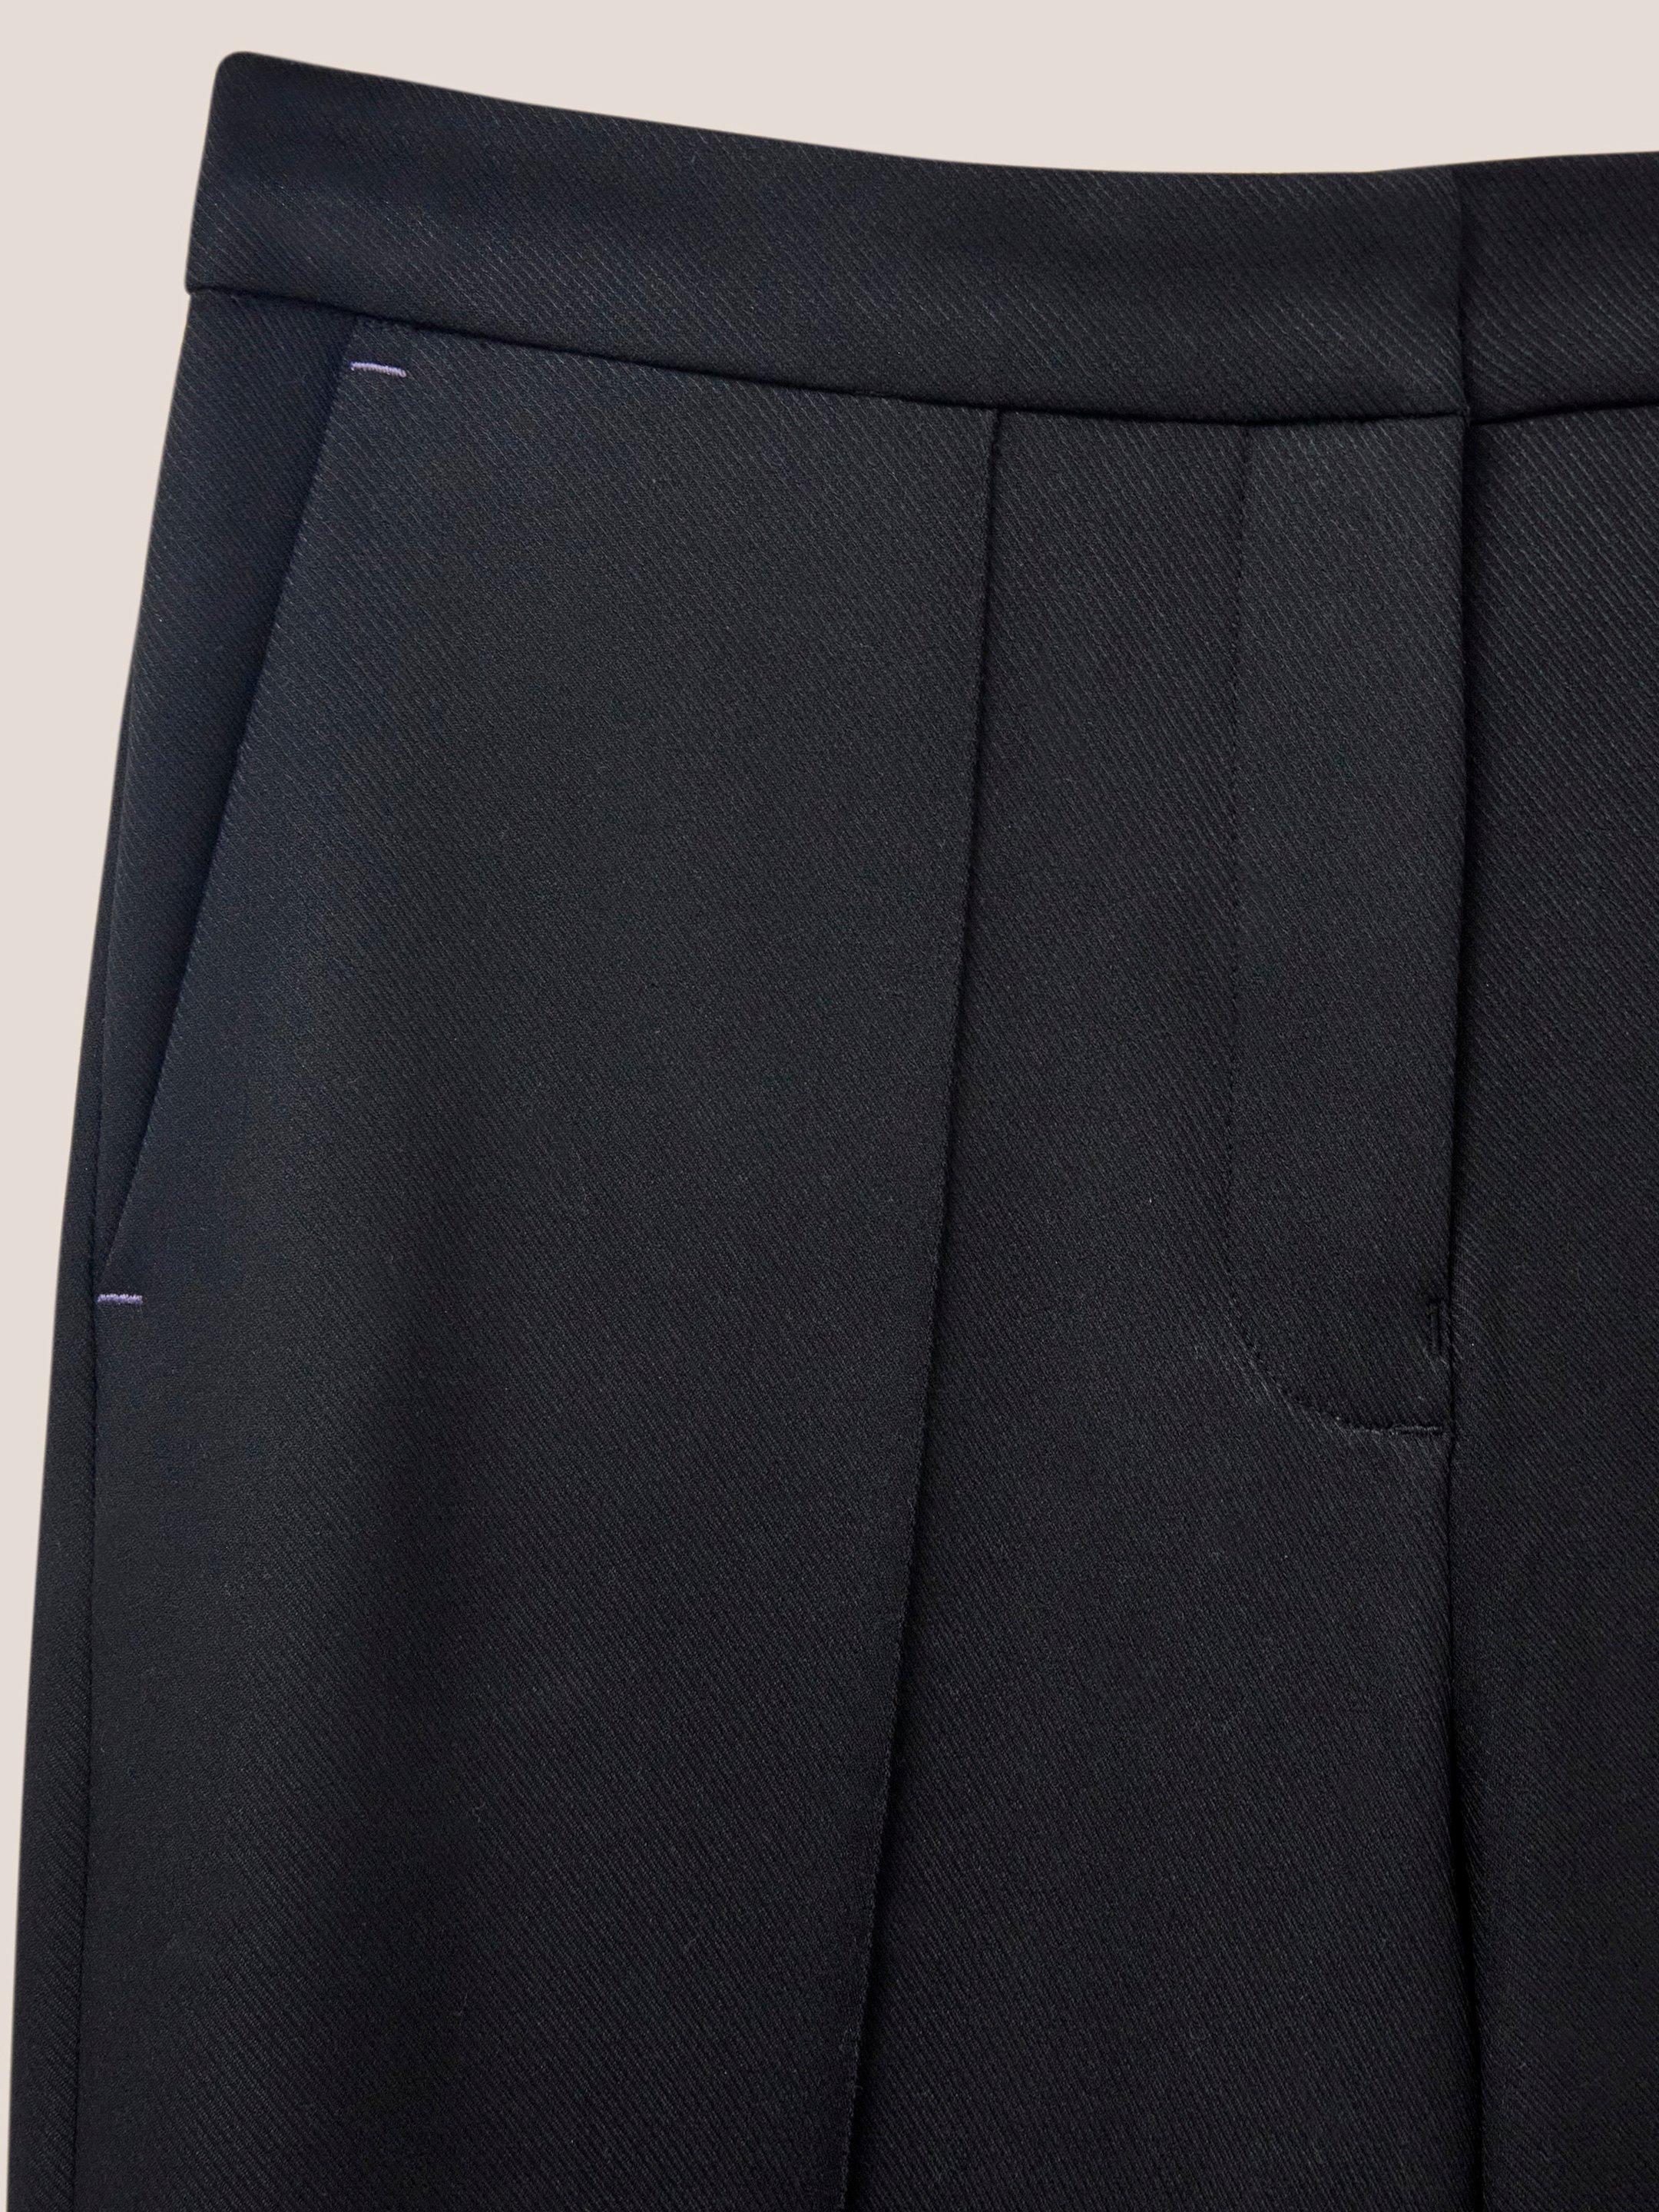 Jenny Wide Leg Trouser in PURE BLK - FLAT DETAIL